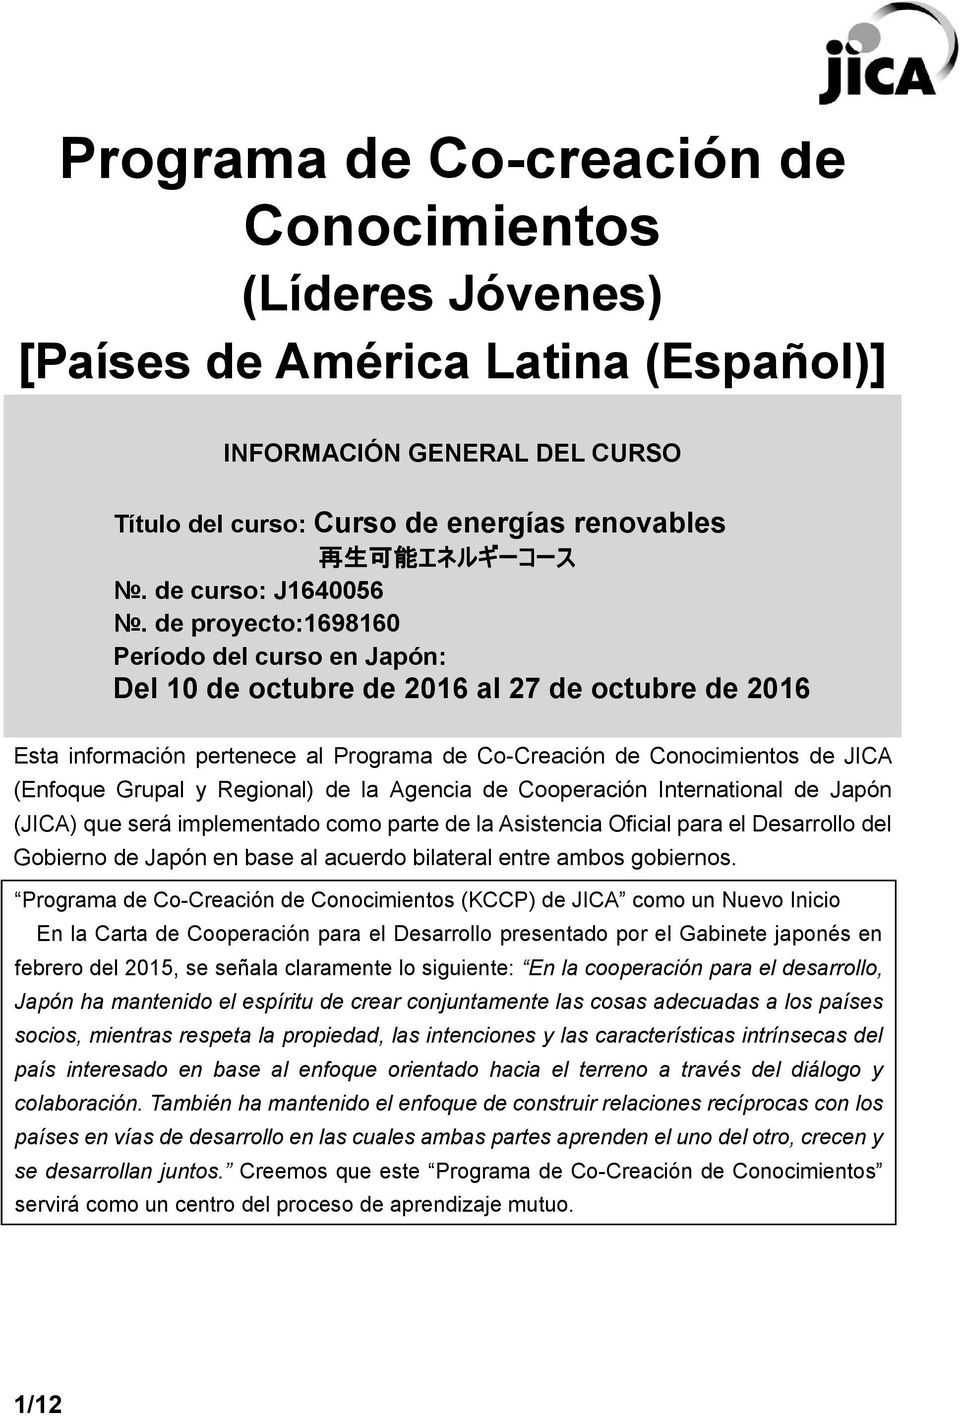 de proyecto:1698160 Período del curso en Japón: Del 10 de de 2016 al 27 de de 2016 Esta información pertenece al Programa de Co-Creación de Conocimientos de JICA (Enfoque Grupal y Regional) de la